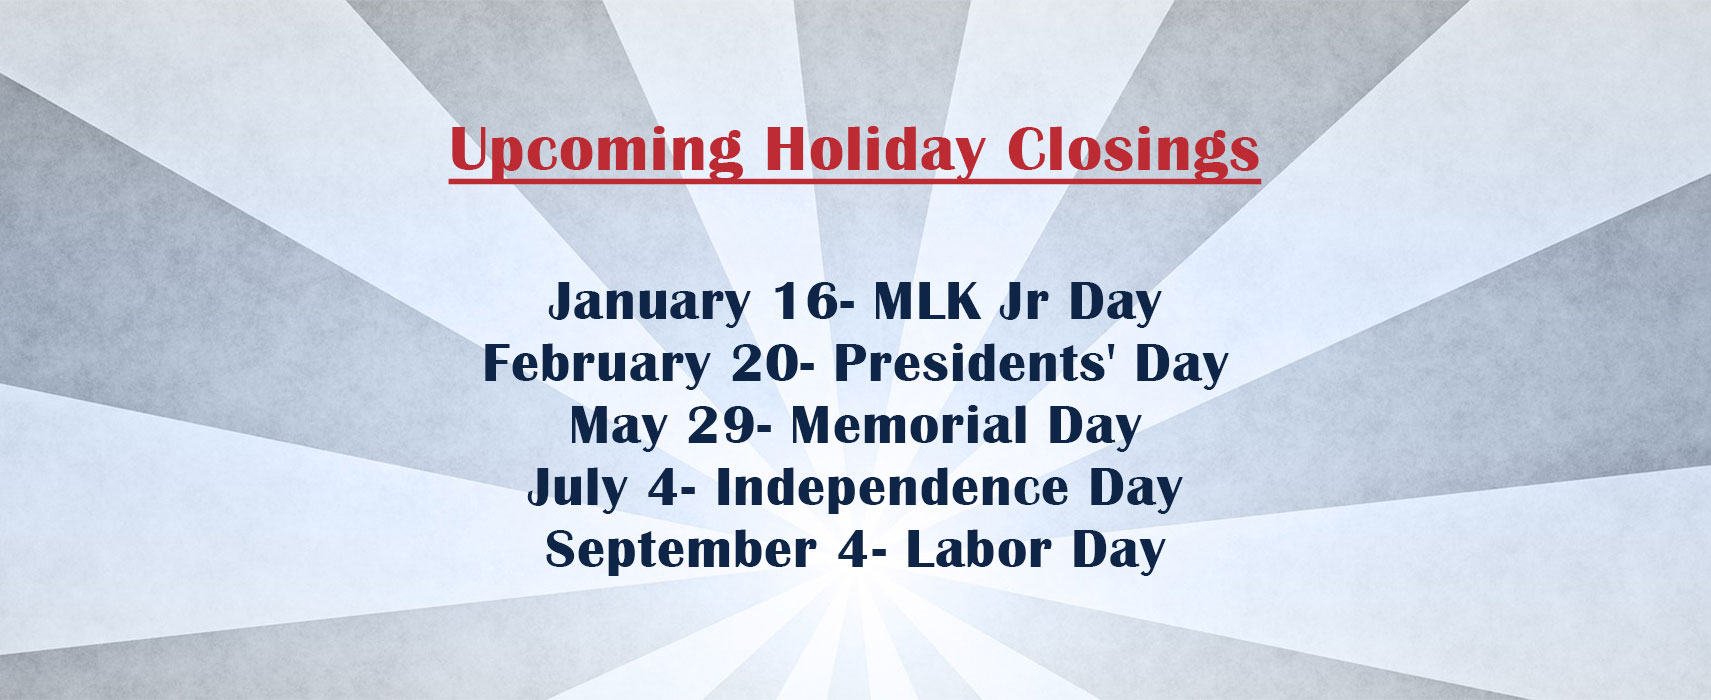 holiday_closing